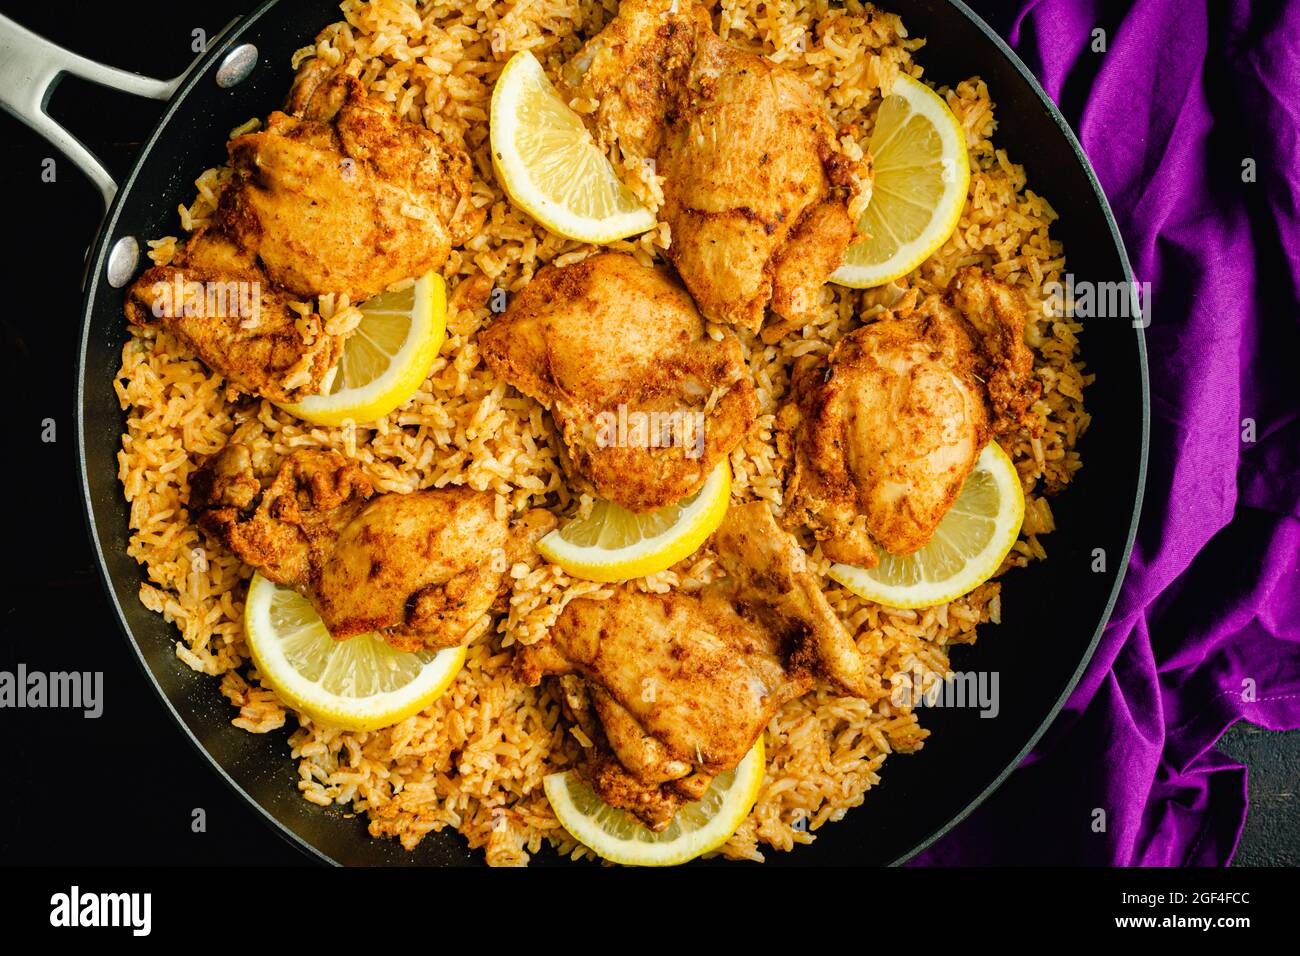 Una padella di pollo e riso spagnolo in una zattera: Cosce di pollo e riso condito con paprika affumicata, aglio e altre spezie Foto Stock